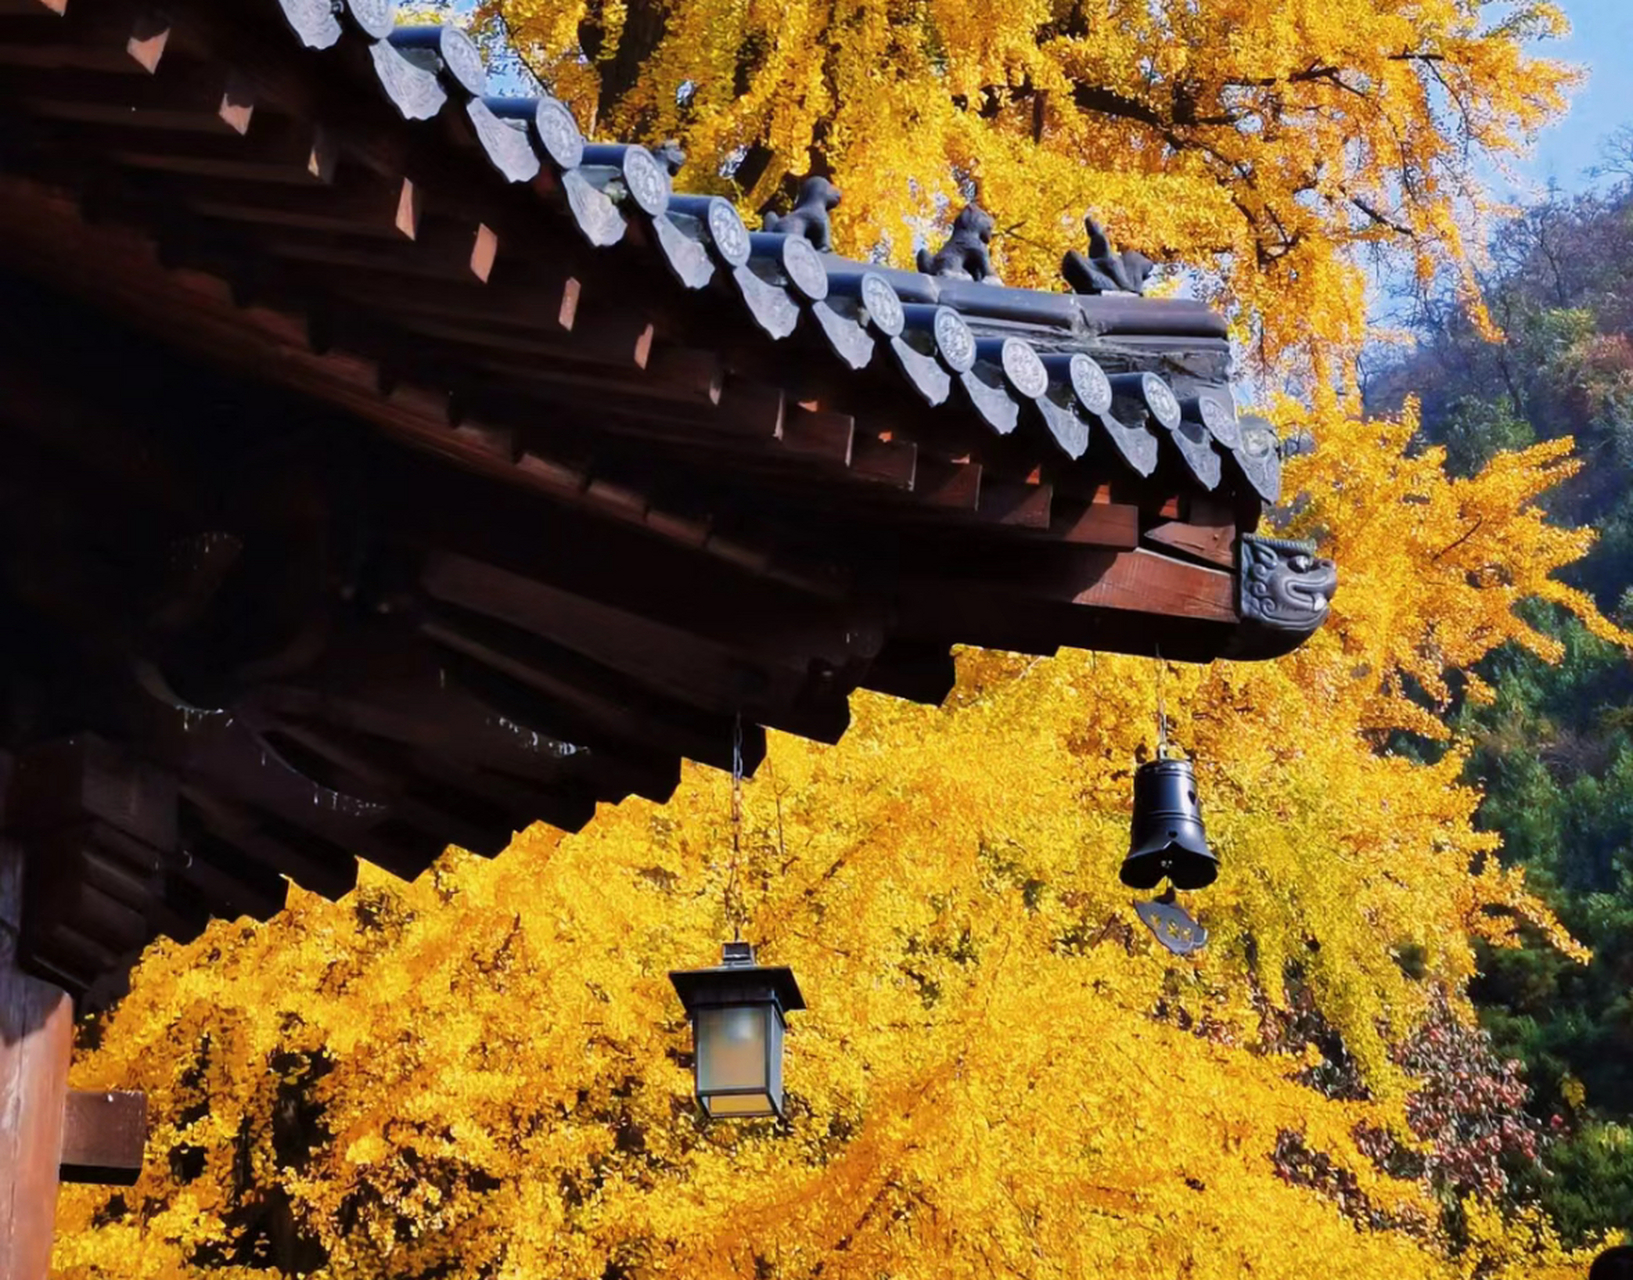 西安古观音禅寺驰名中外,确切的说是因为那一树古银杏树的缘故,经历了